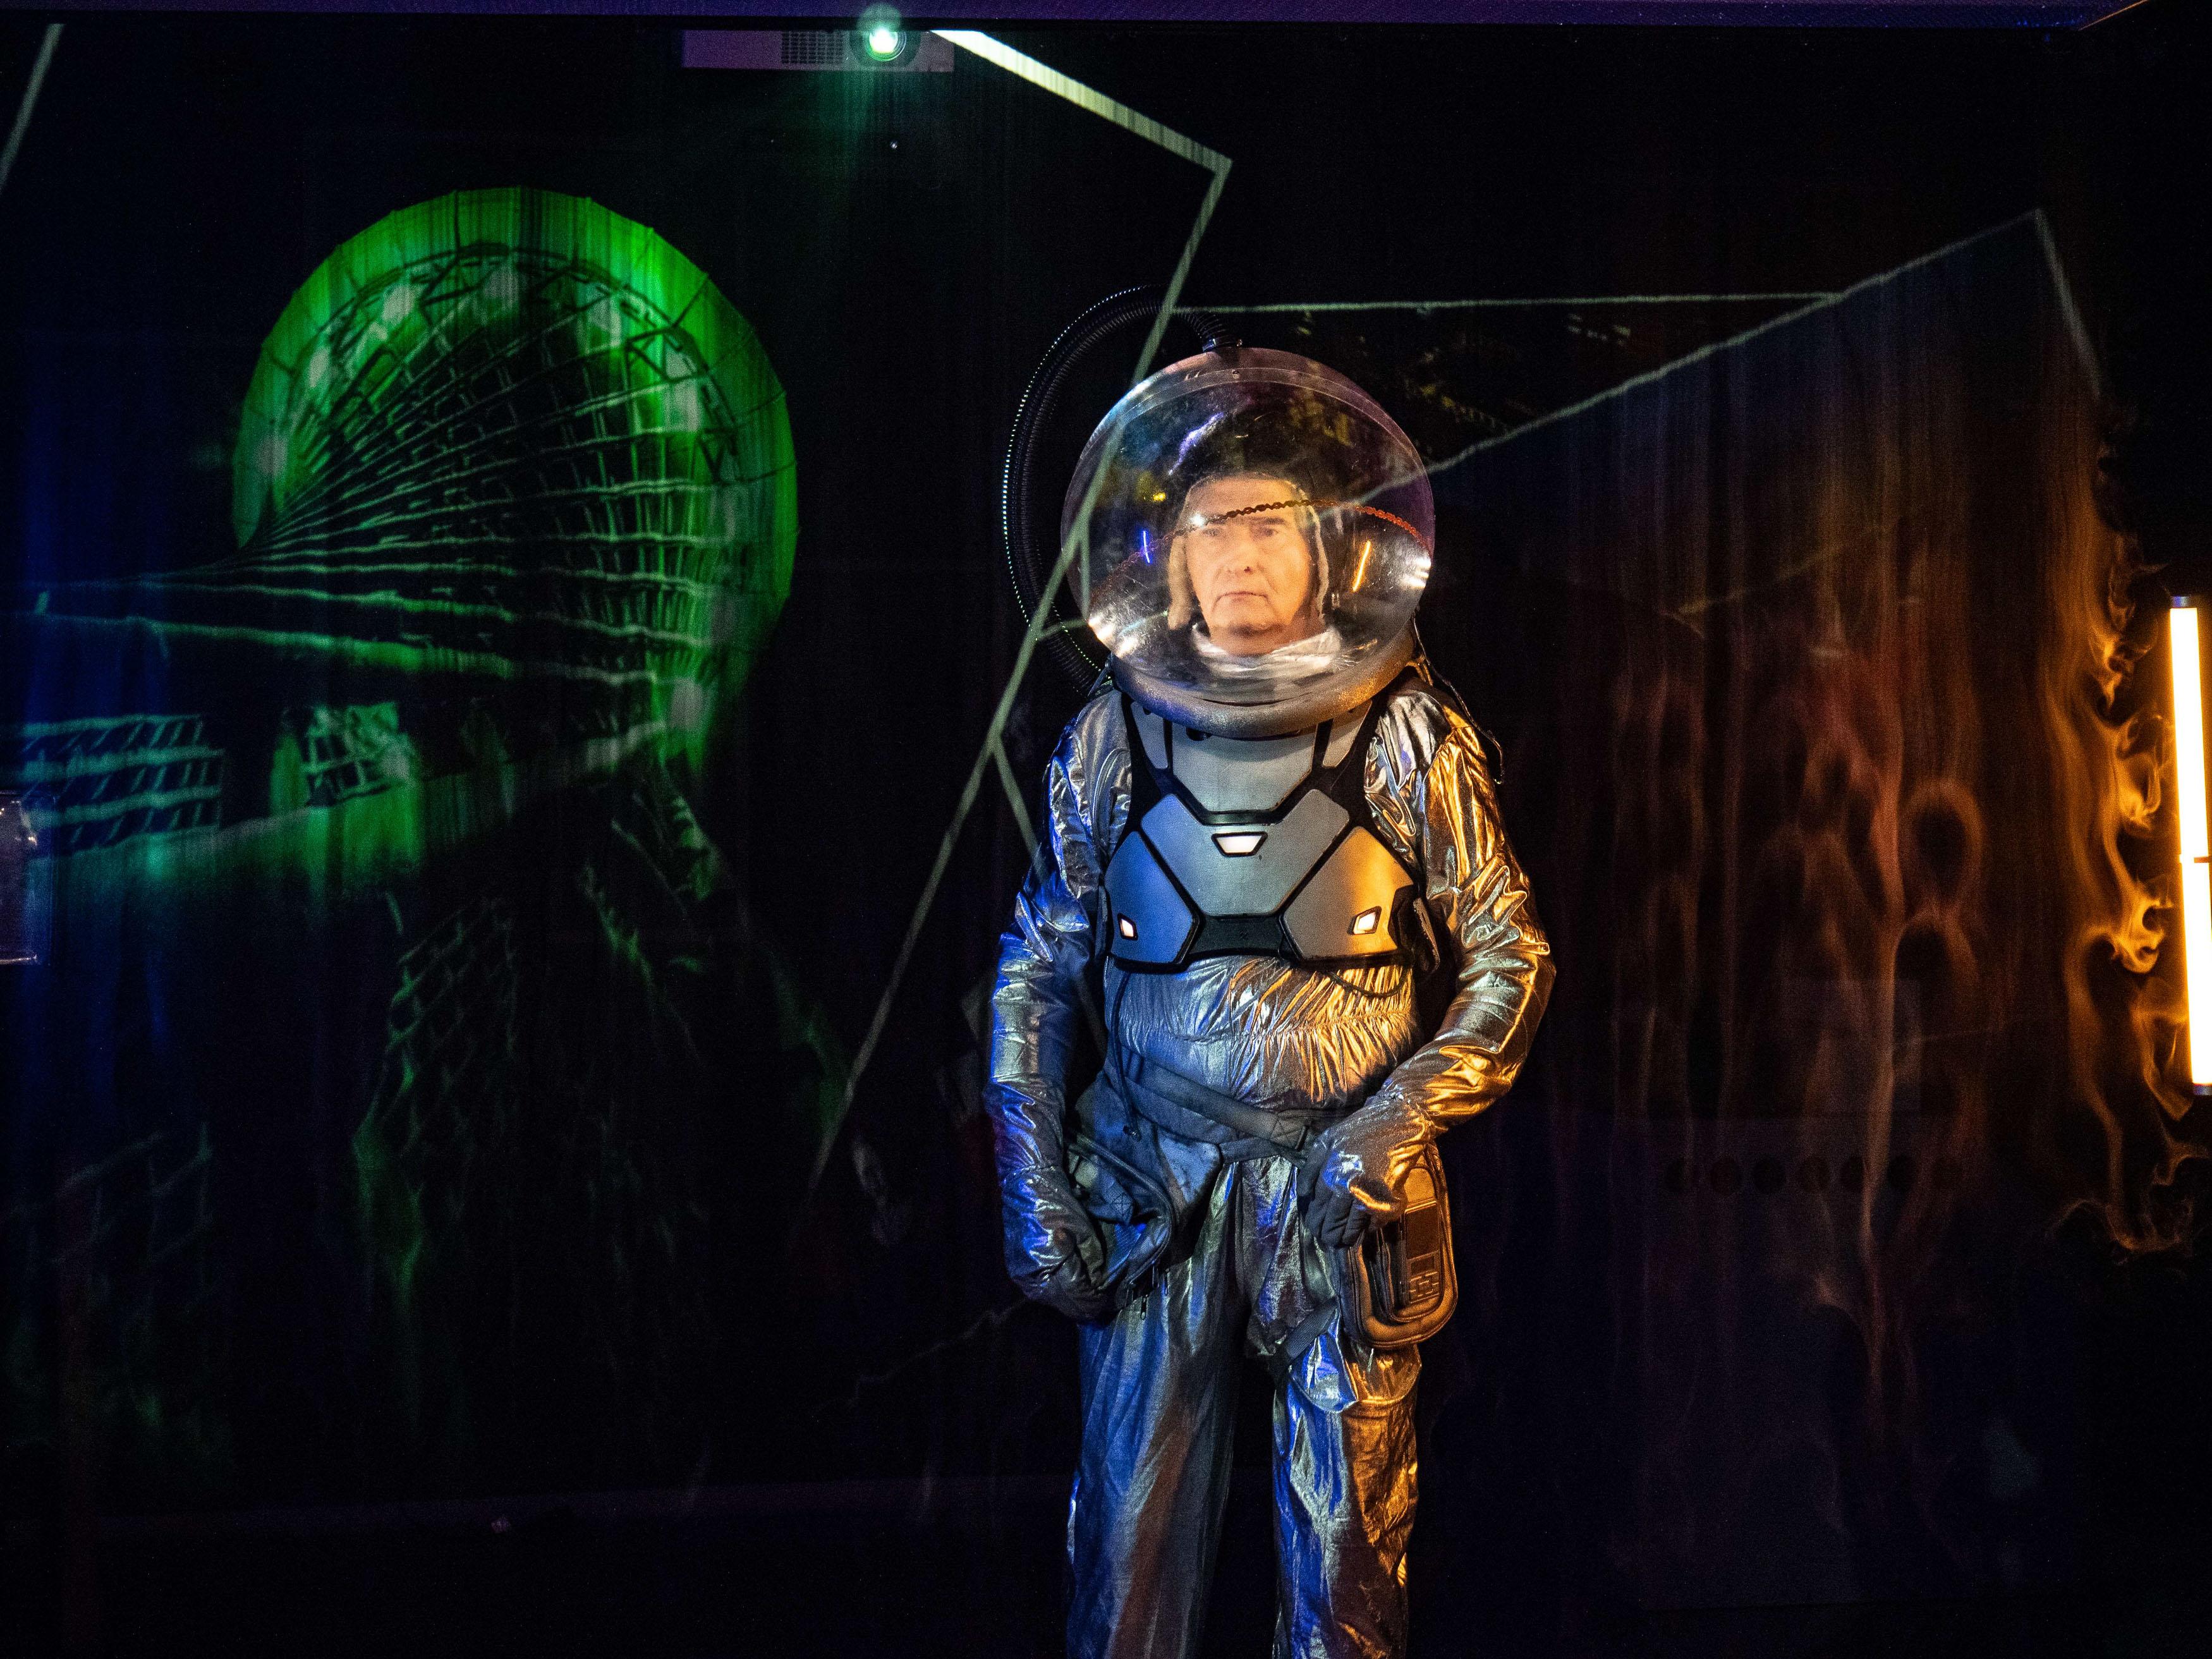 Mężczyzna w stroju astronauty stoi w ciemnym pomieszczeniu, gdzie na ścianach wyświetlają się kolorowe figury, wzory